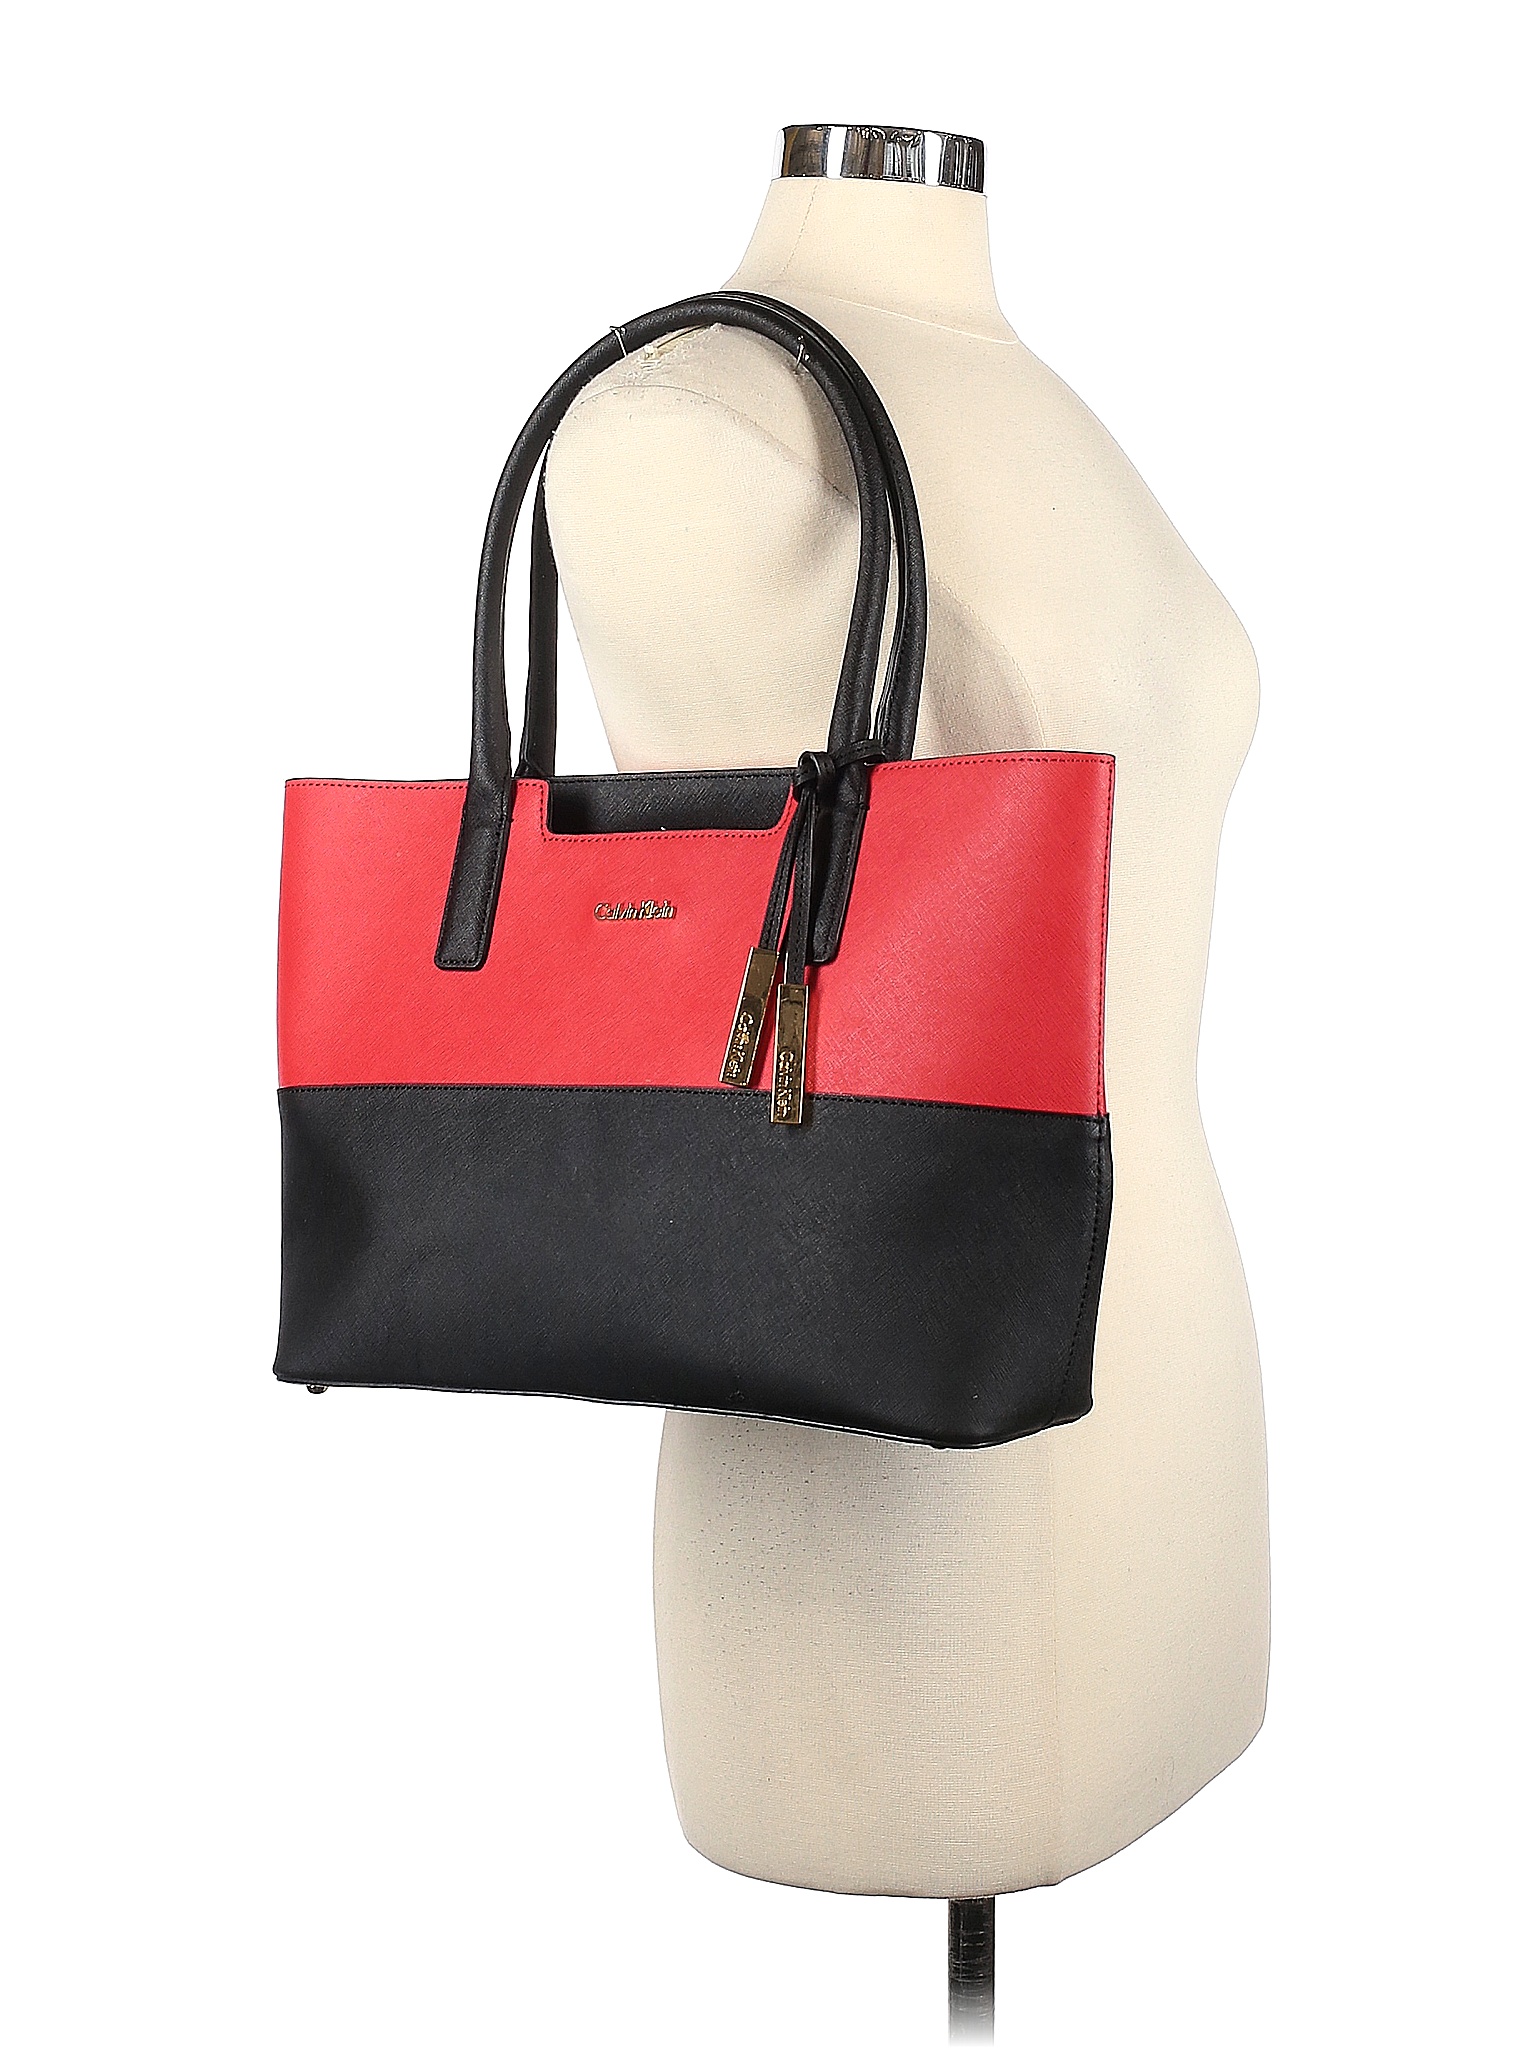 Handbags & Purses: New & Used On Sale Up To 90% Off | thredUP